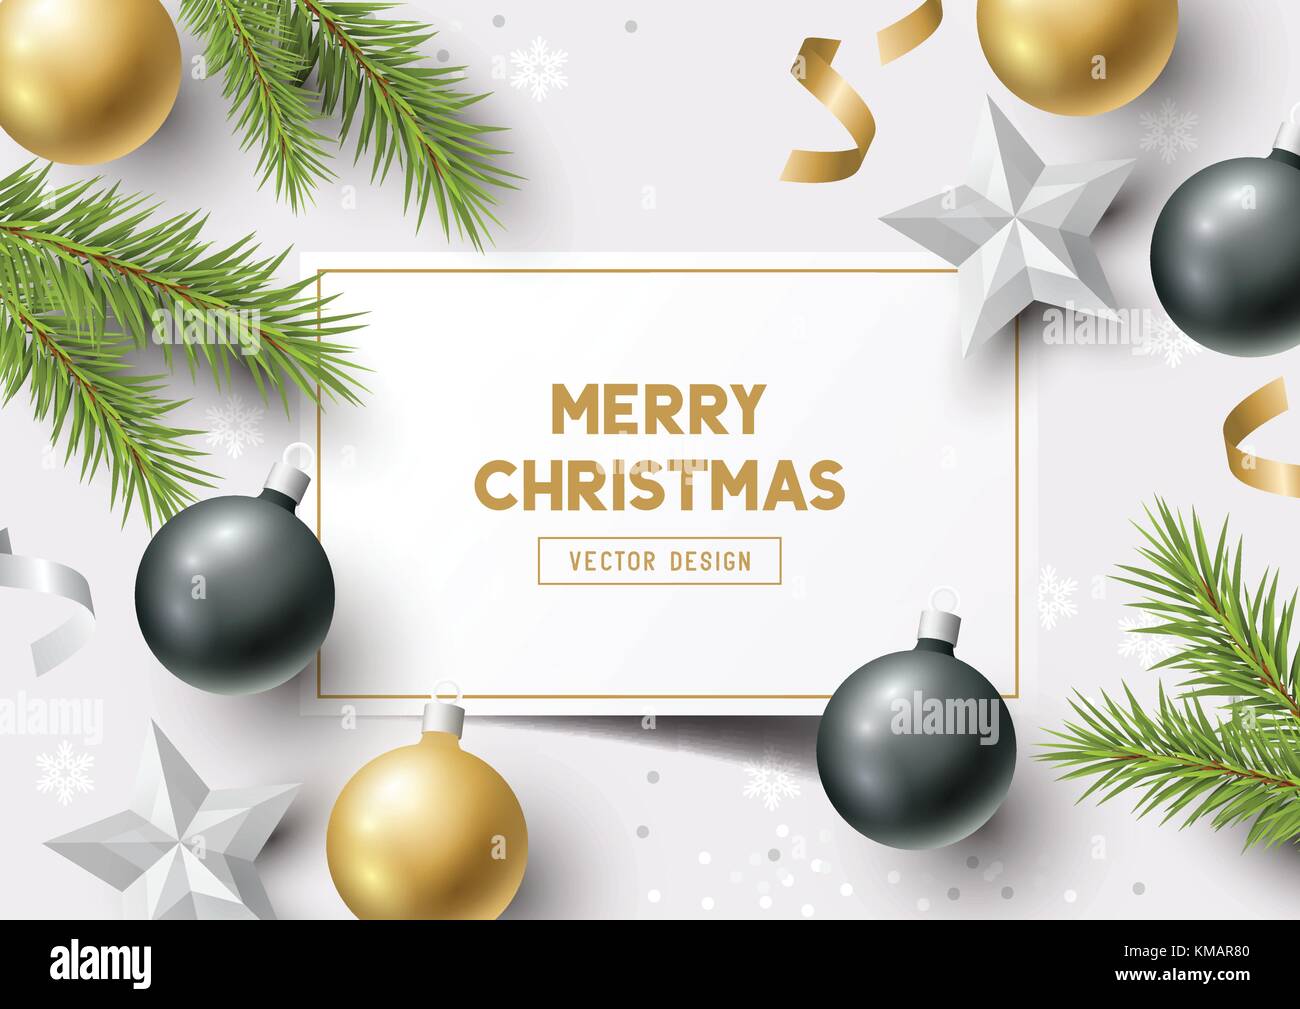 Weihnachten Komposition mit Tannenzweigen, Christbaumkugeln und Schneeflocken auf einem bunten Abstrakt Hintergrund. top view Vector Illustration. Stock Vektor